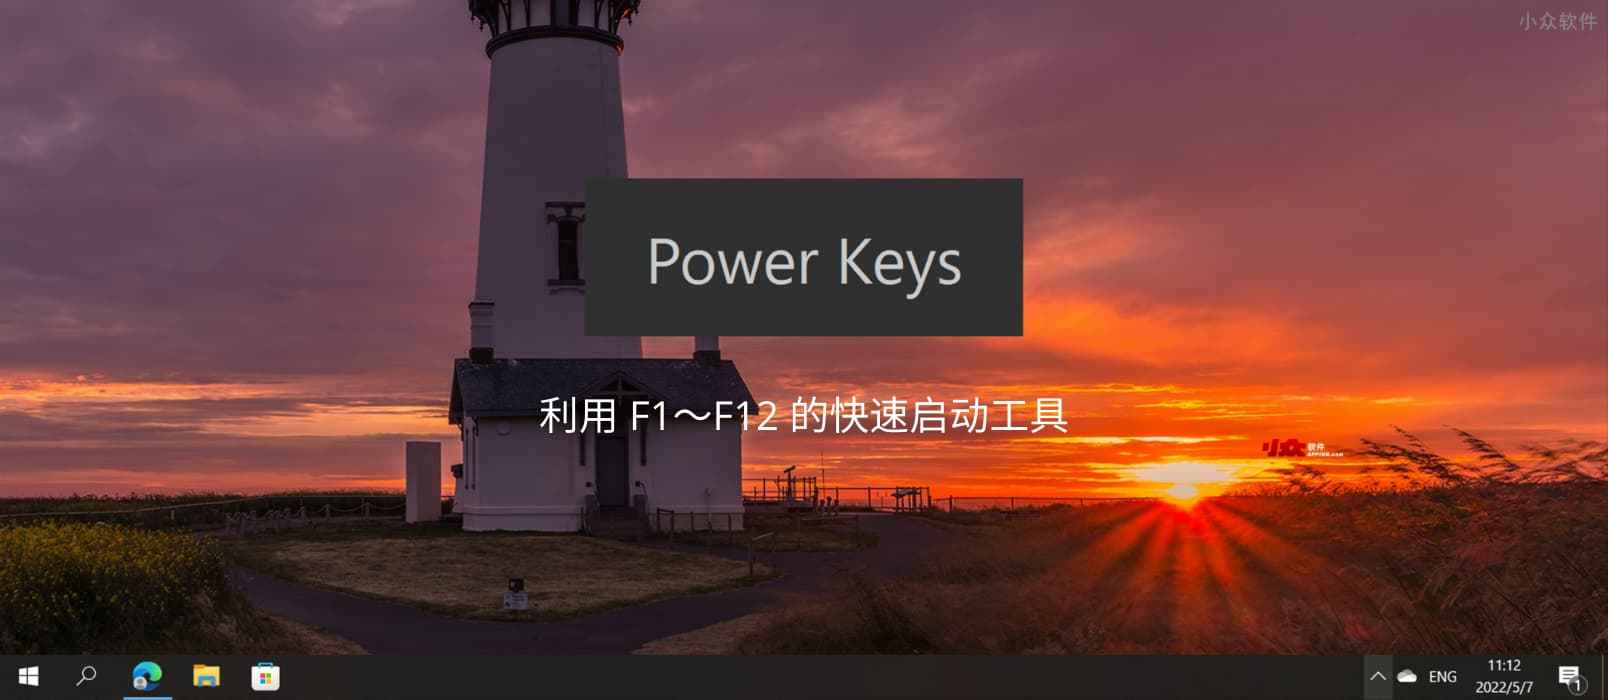 光速启动 Power Keys – 利用 F1～F12 的快速启动工具，还支持 Win 键增强、模拟数字小键盘区、游戏模式等功能